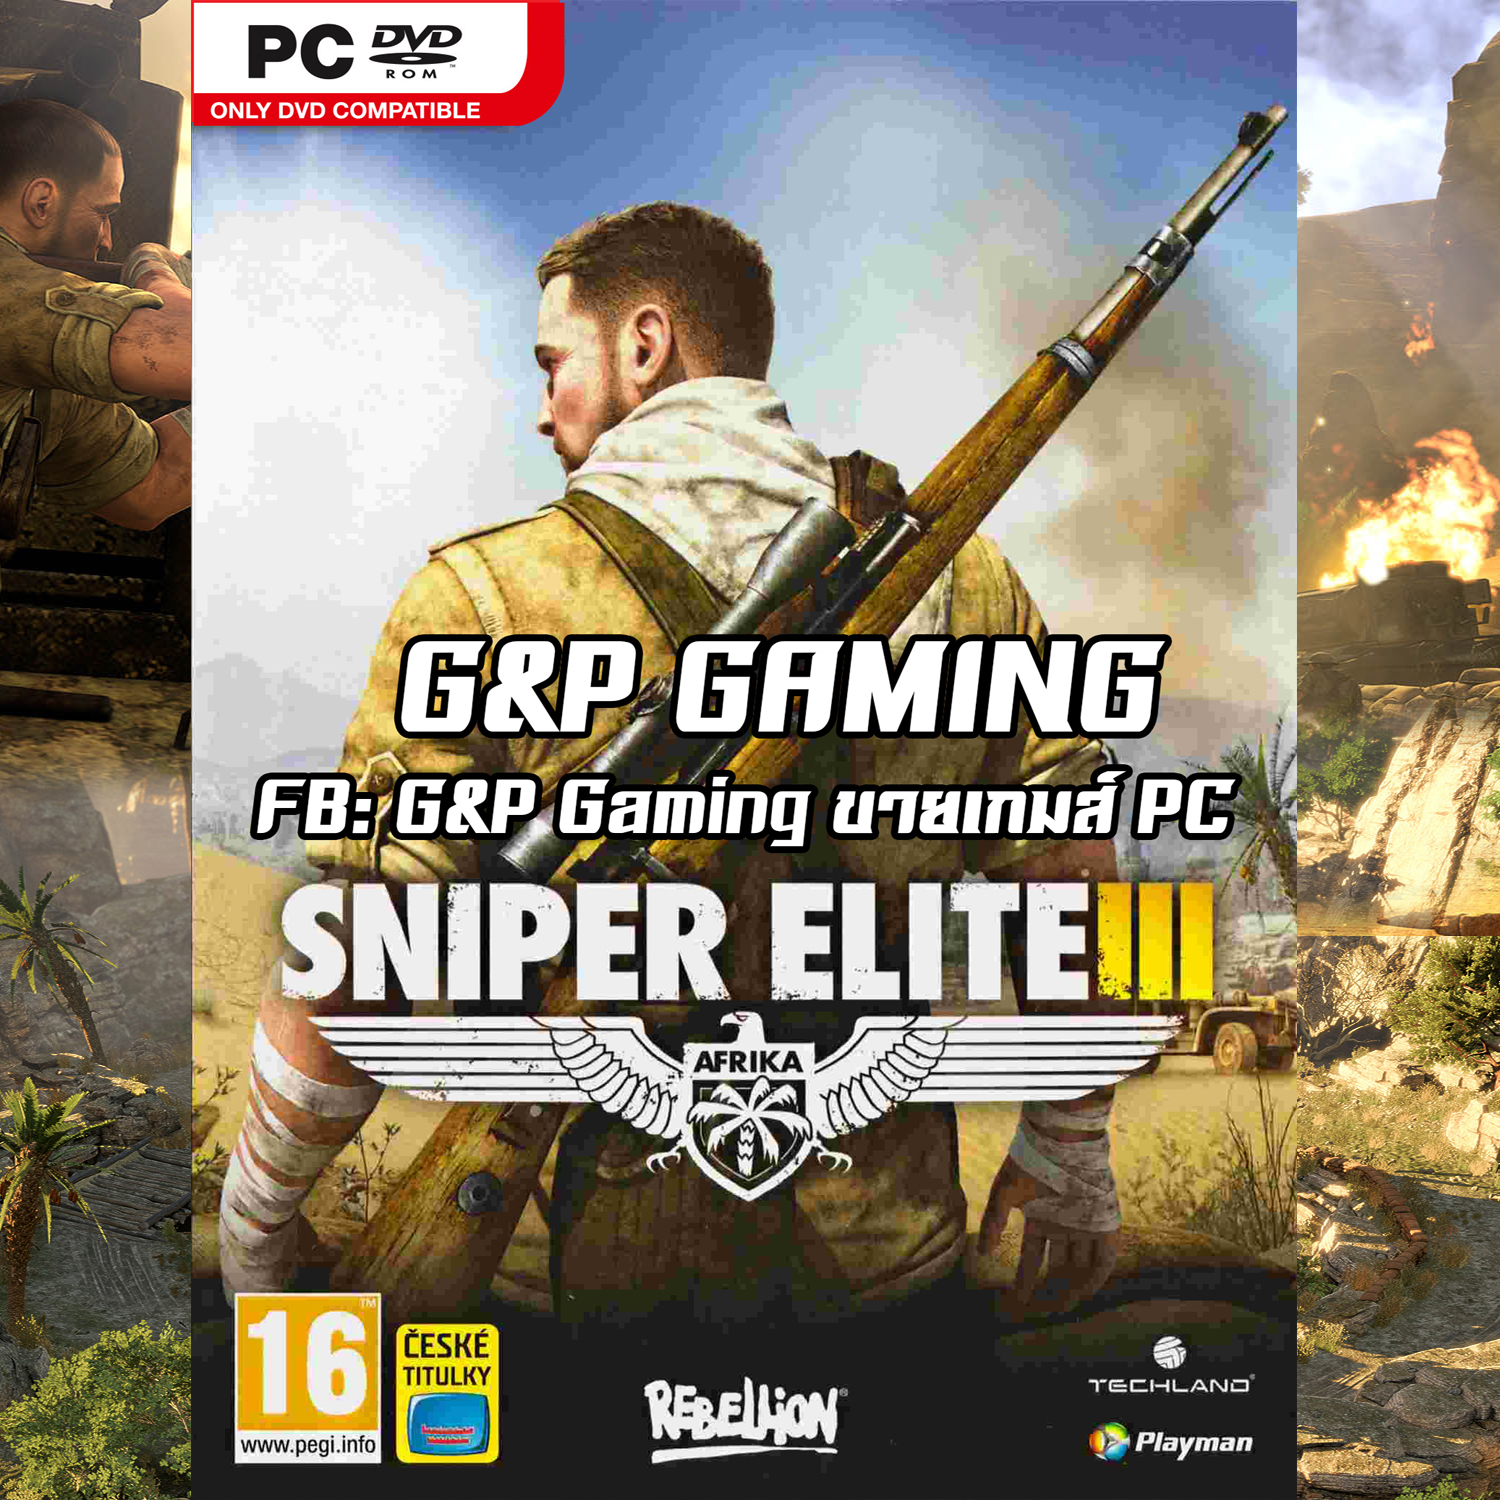 sniper elite 4 for pc full version